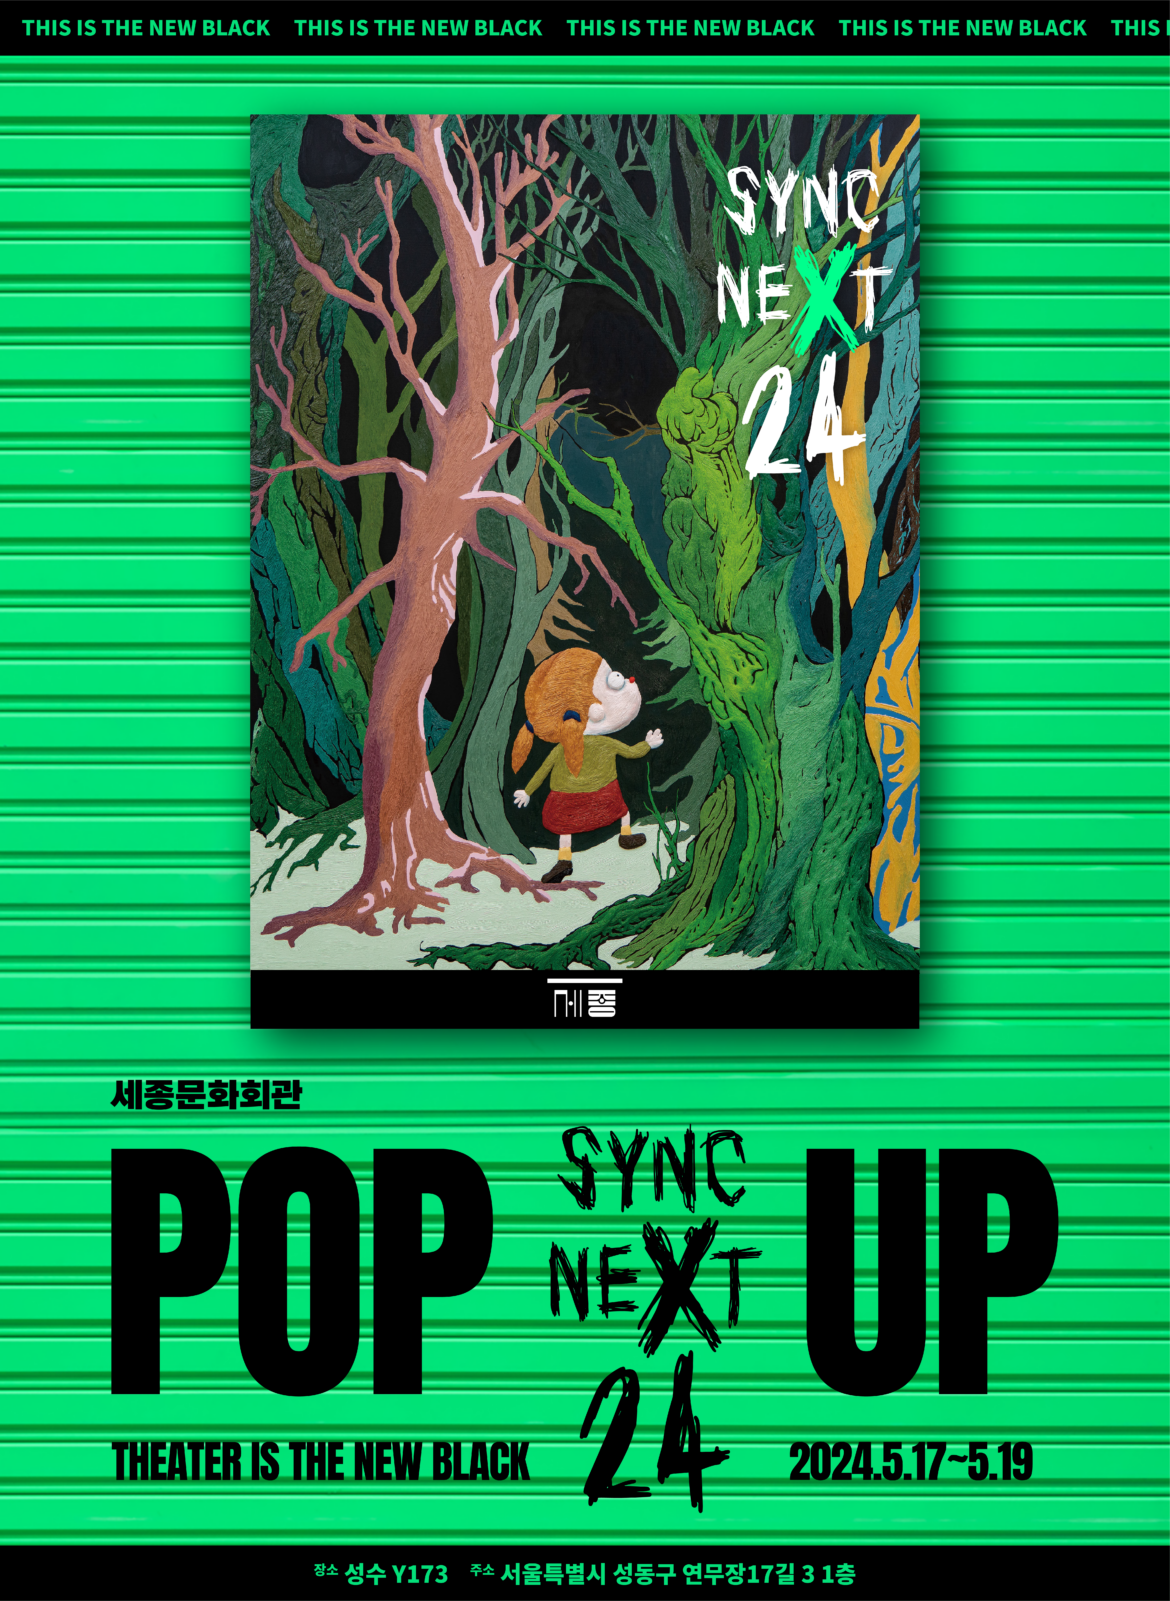 싱크 넥스트 24(Sync Next 24) 팝업, 5월 17일 개장! 공공 공연장 최초로 성수동에 팝업